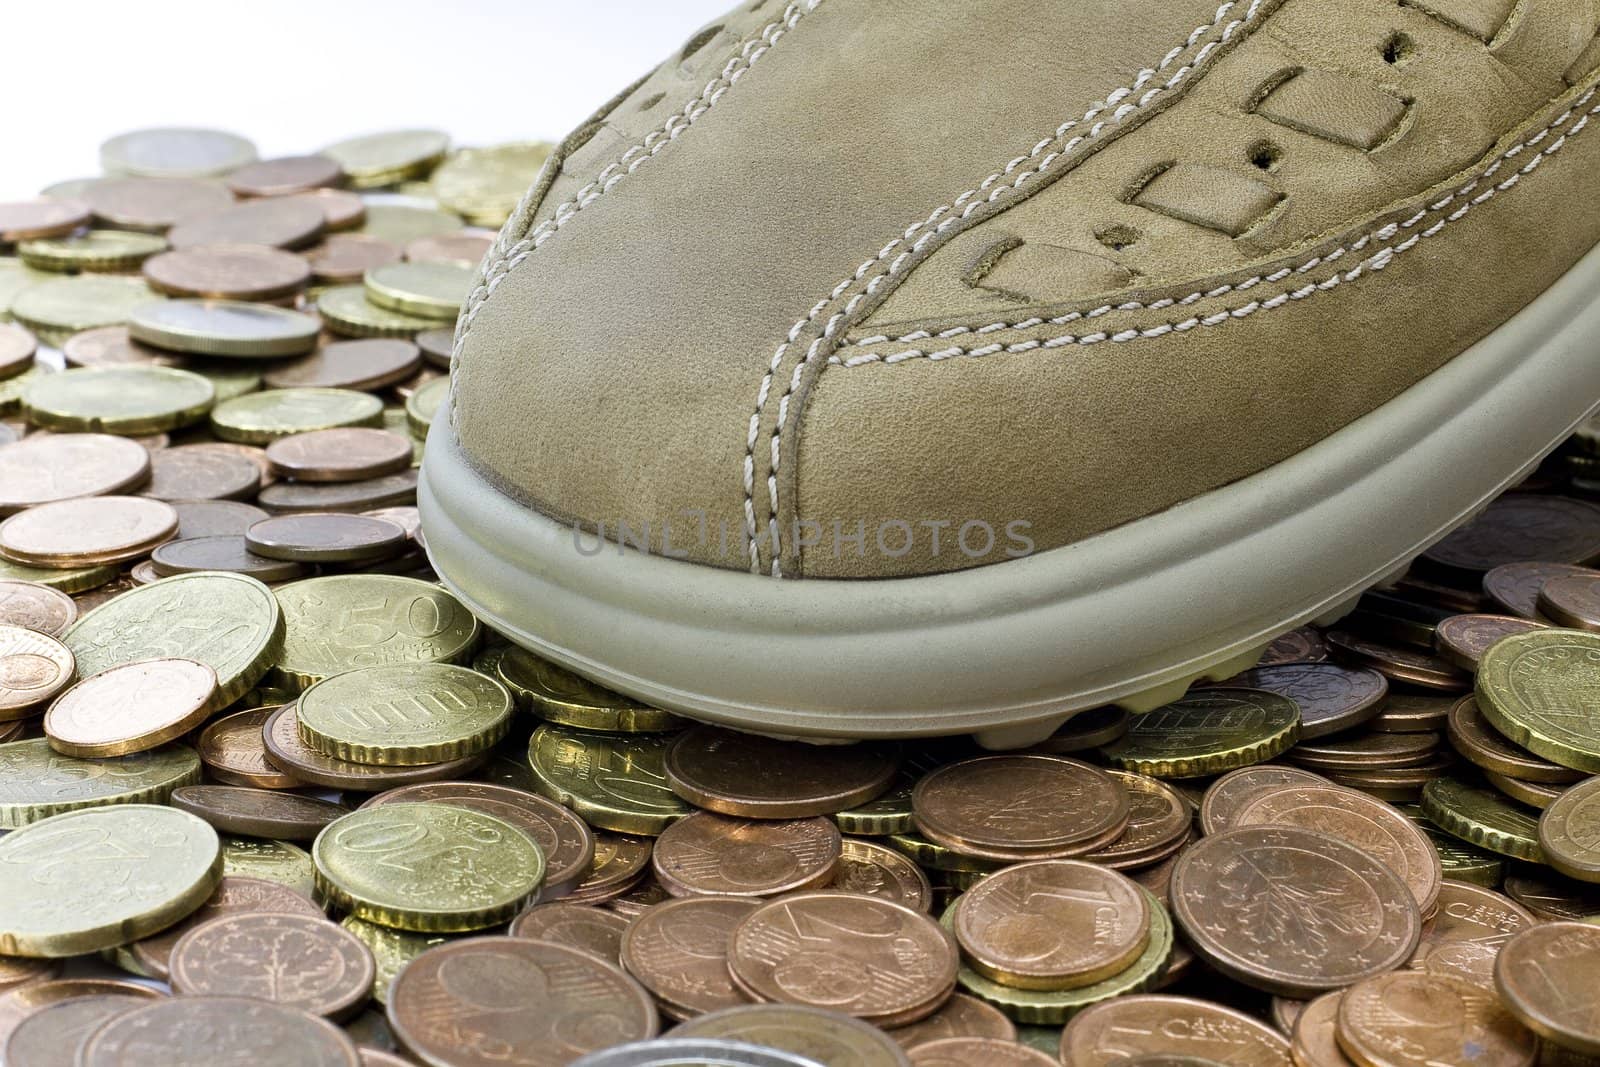 leasure leather shoe walking on money by gewoldi